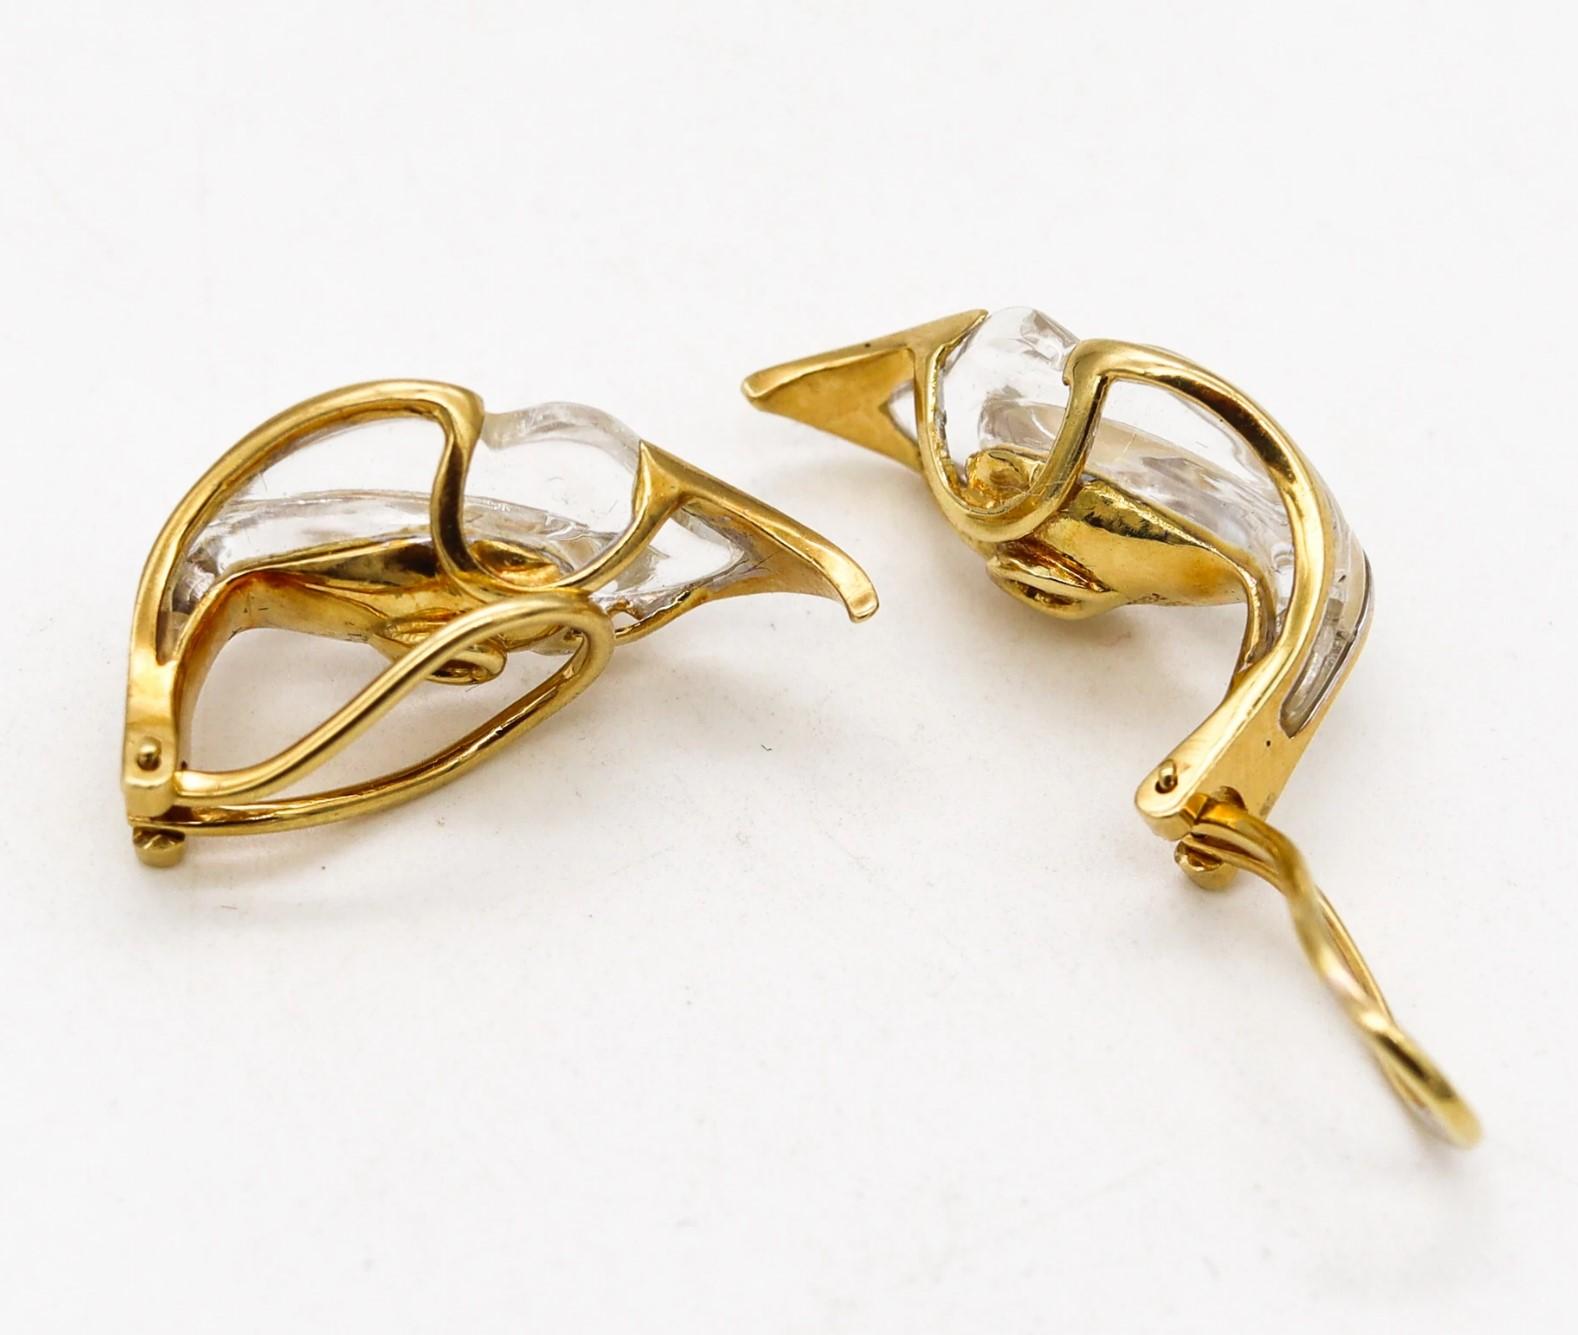 Tiffany & Co 1977 Elsa Peretti Rock Quartz Lilies Clips Earrings In 18Kt Gold For Sale 1